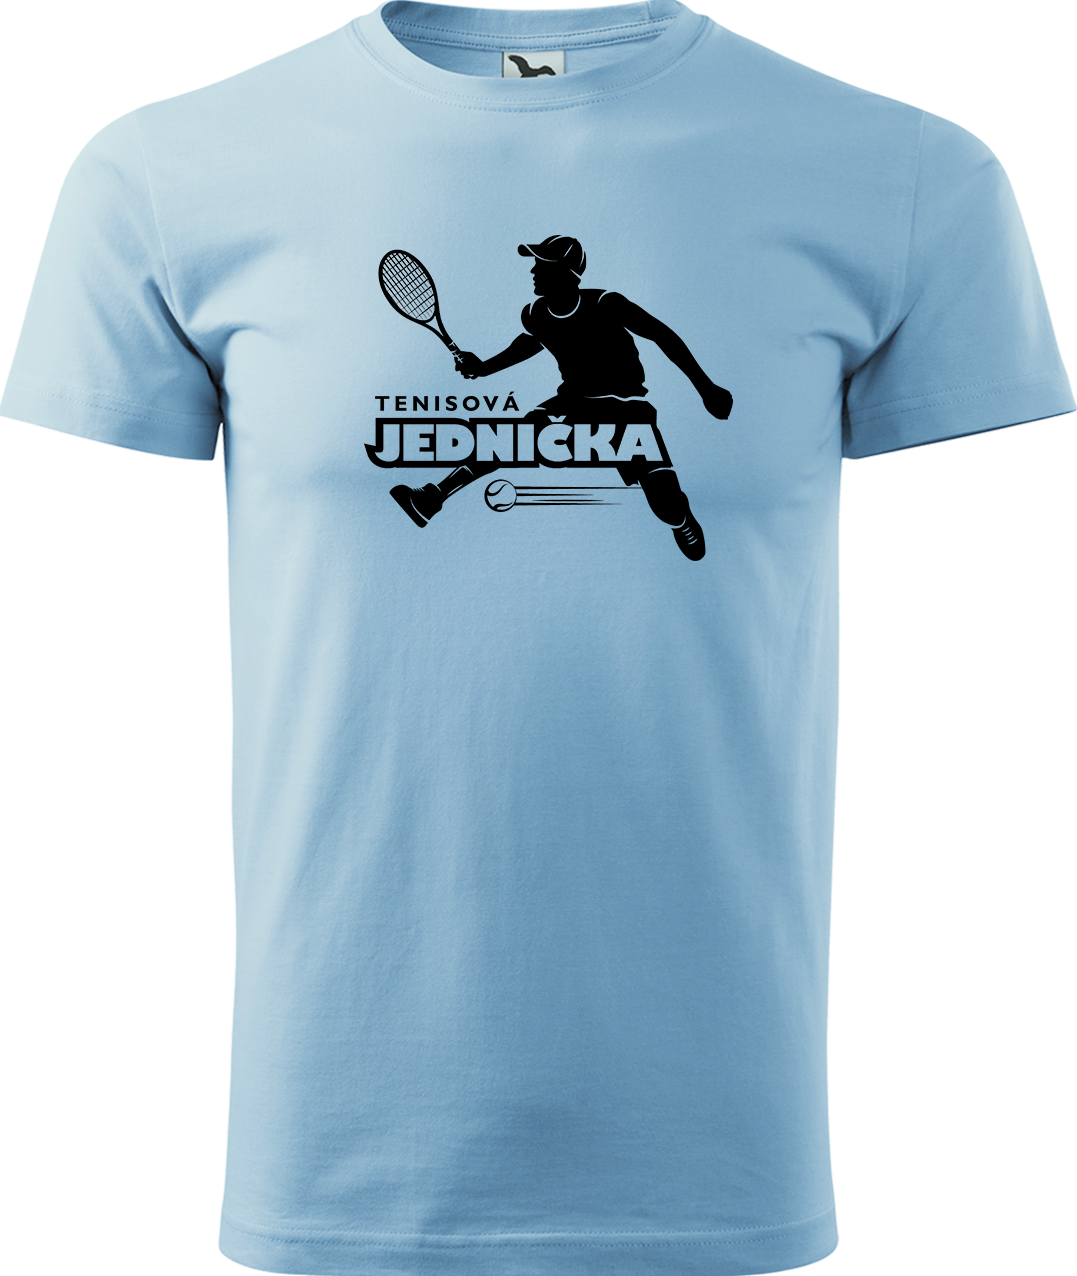 Tenisové tričko - Tenisová jednička Velikost: L, Barva: Nebesky modrá (15)